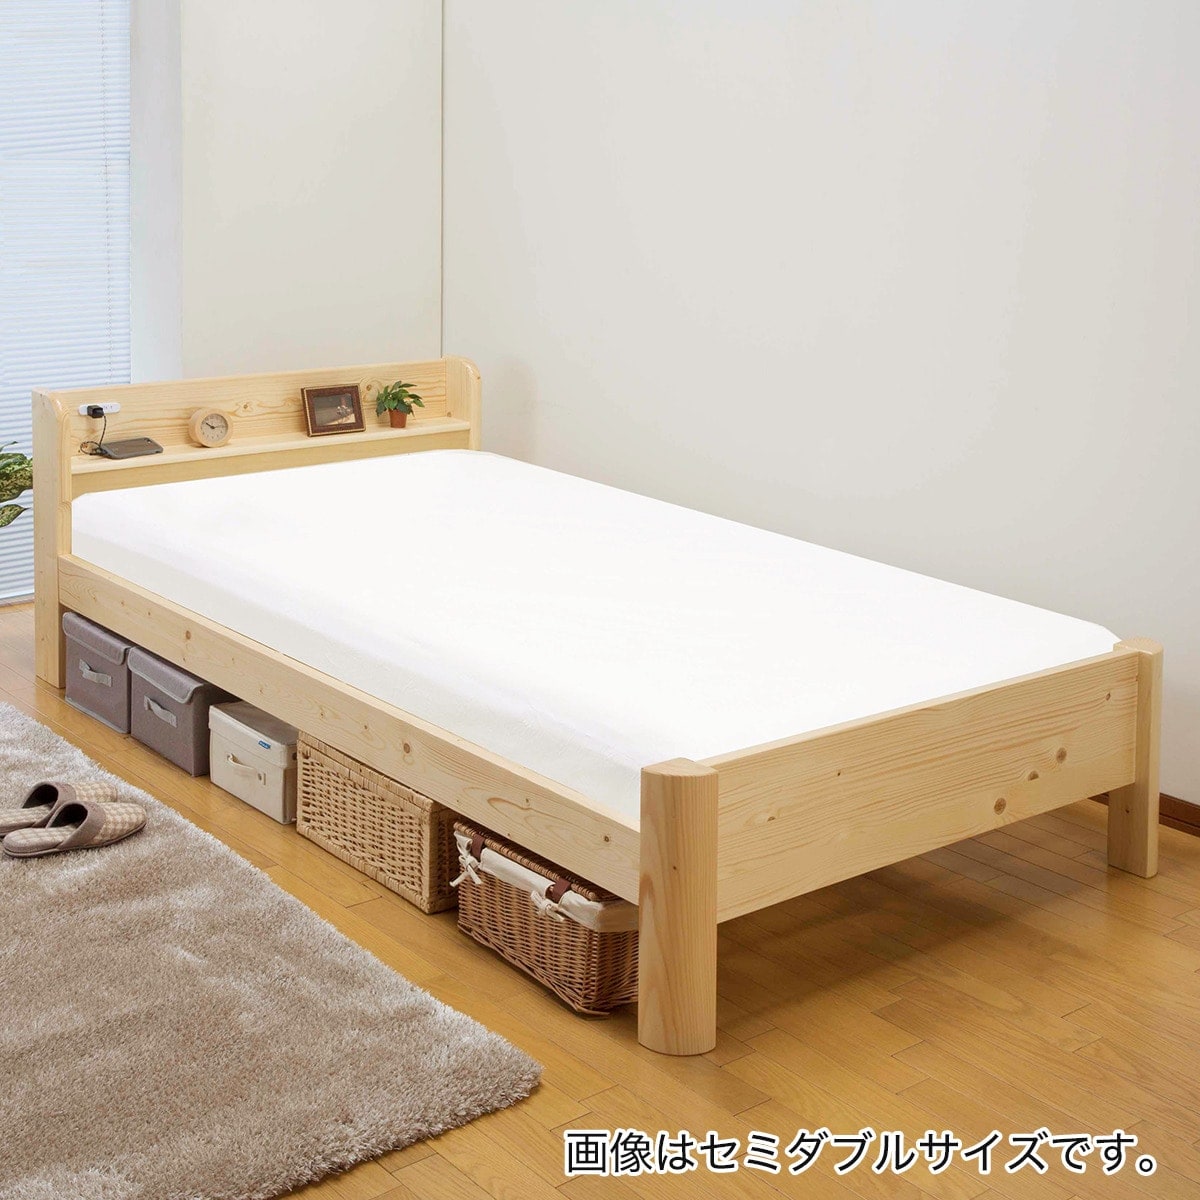 ニトリ】棚付きチェスト型ベッド(ベルタ3 チェスト40) - ベッド